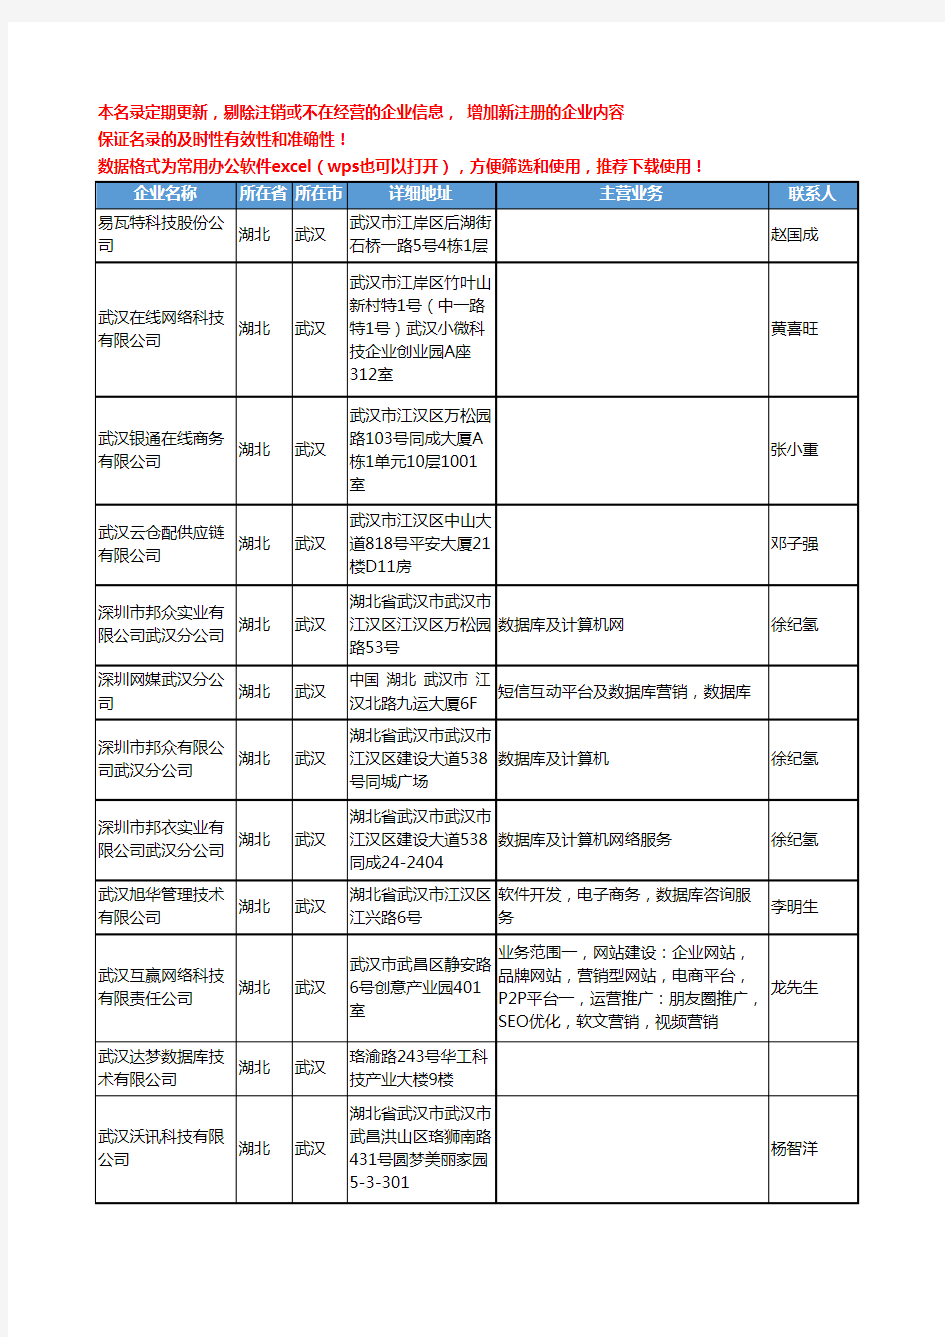 2020新版湖北省数据库工商企业公司名录名单黄页联系方式大全45家